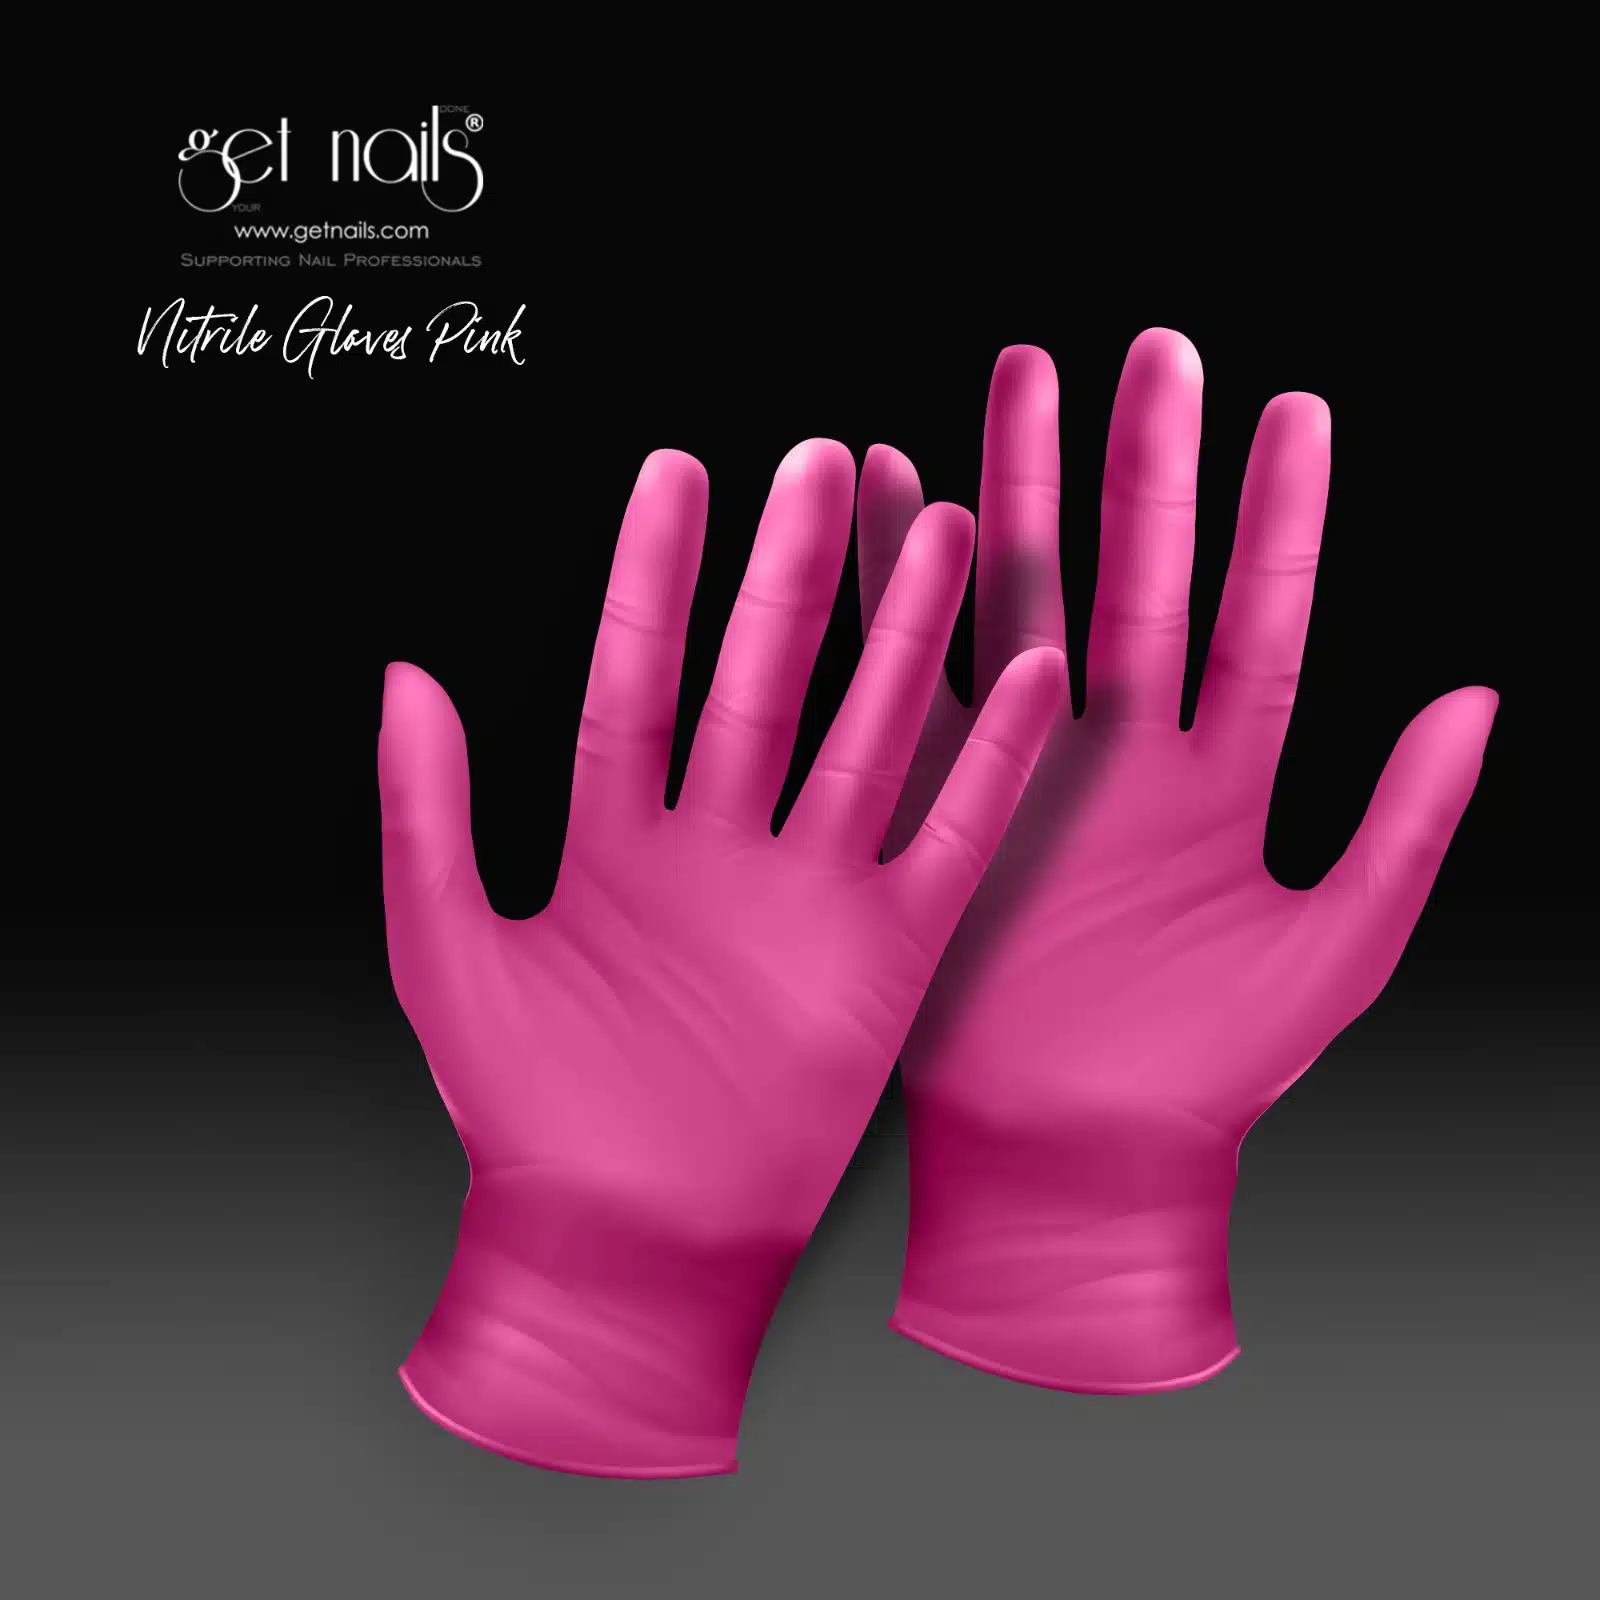 Get Nails Austria - Higijenske rukavice veličine S, 10 komada (ružičaste)